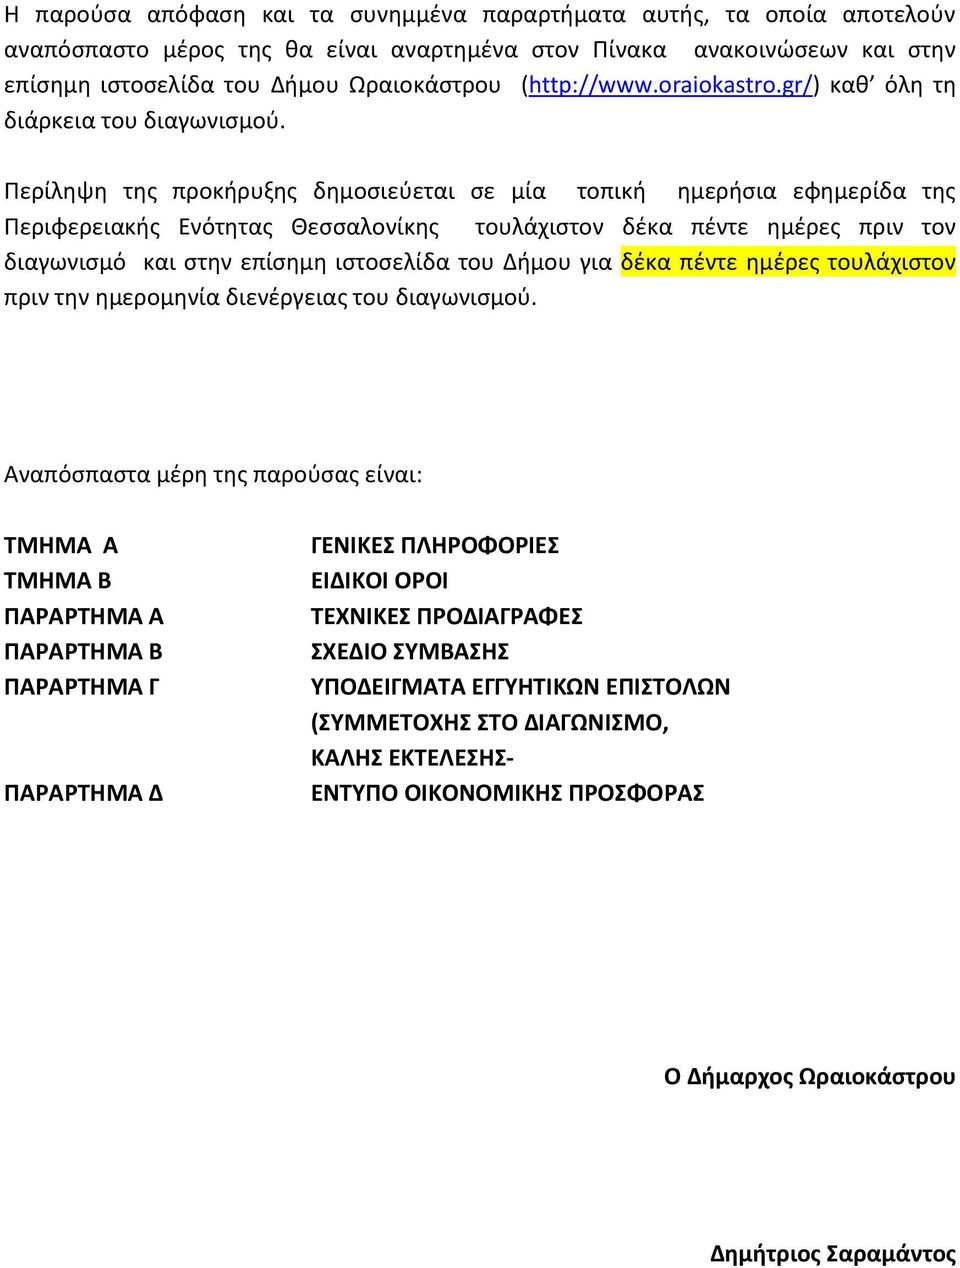 Περίληψη της προκήρυξης δημοσιεύεται σε μία τοπική ημερήσια εφημερίδα της Περιφερειακής Ενότητας Θεσσαλονίκης τουλάχιστον δέκα πέντε ημέρες πριν τον διαγωνισμό και στην επίσημη ιστοσελίδα του Δήμου